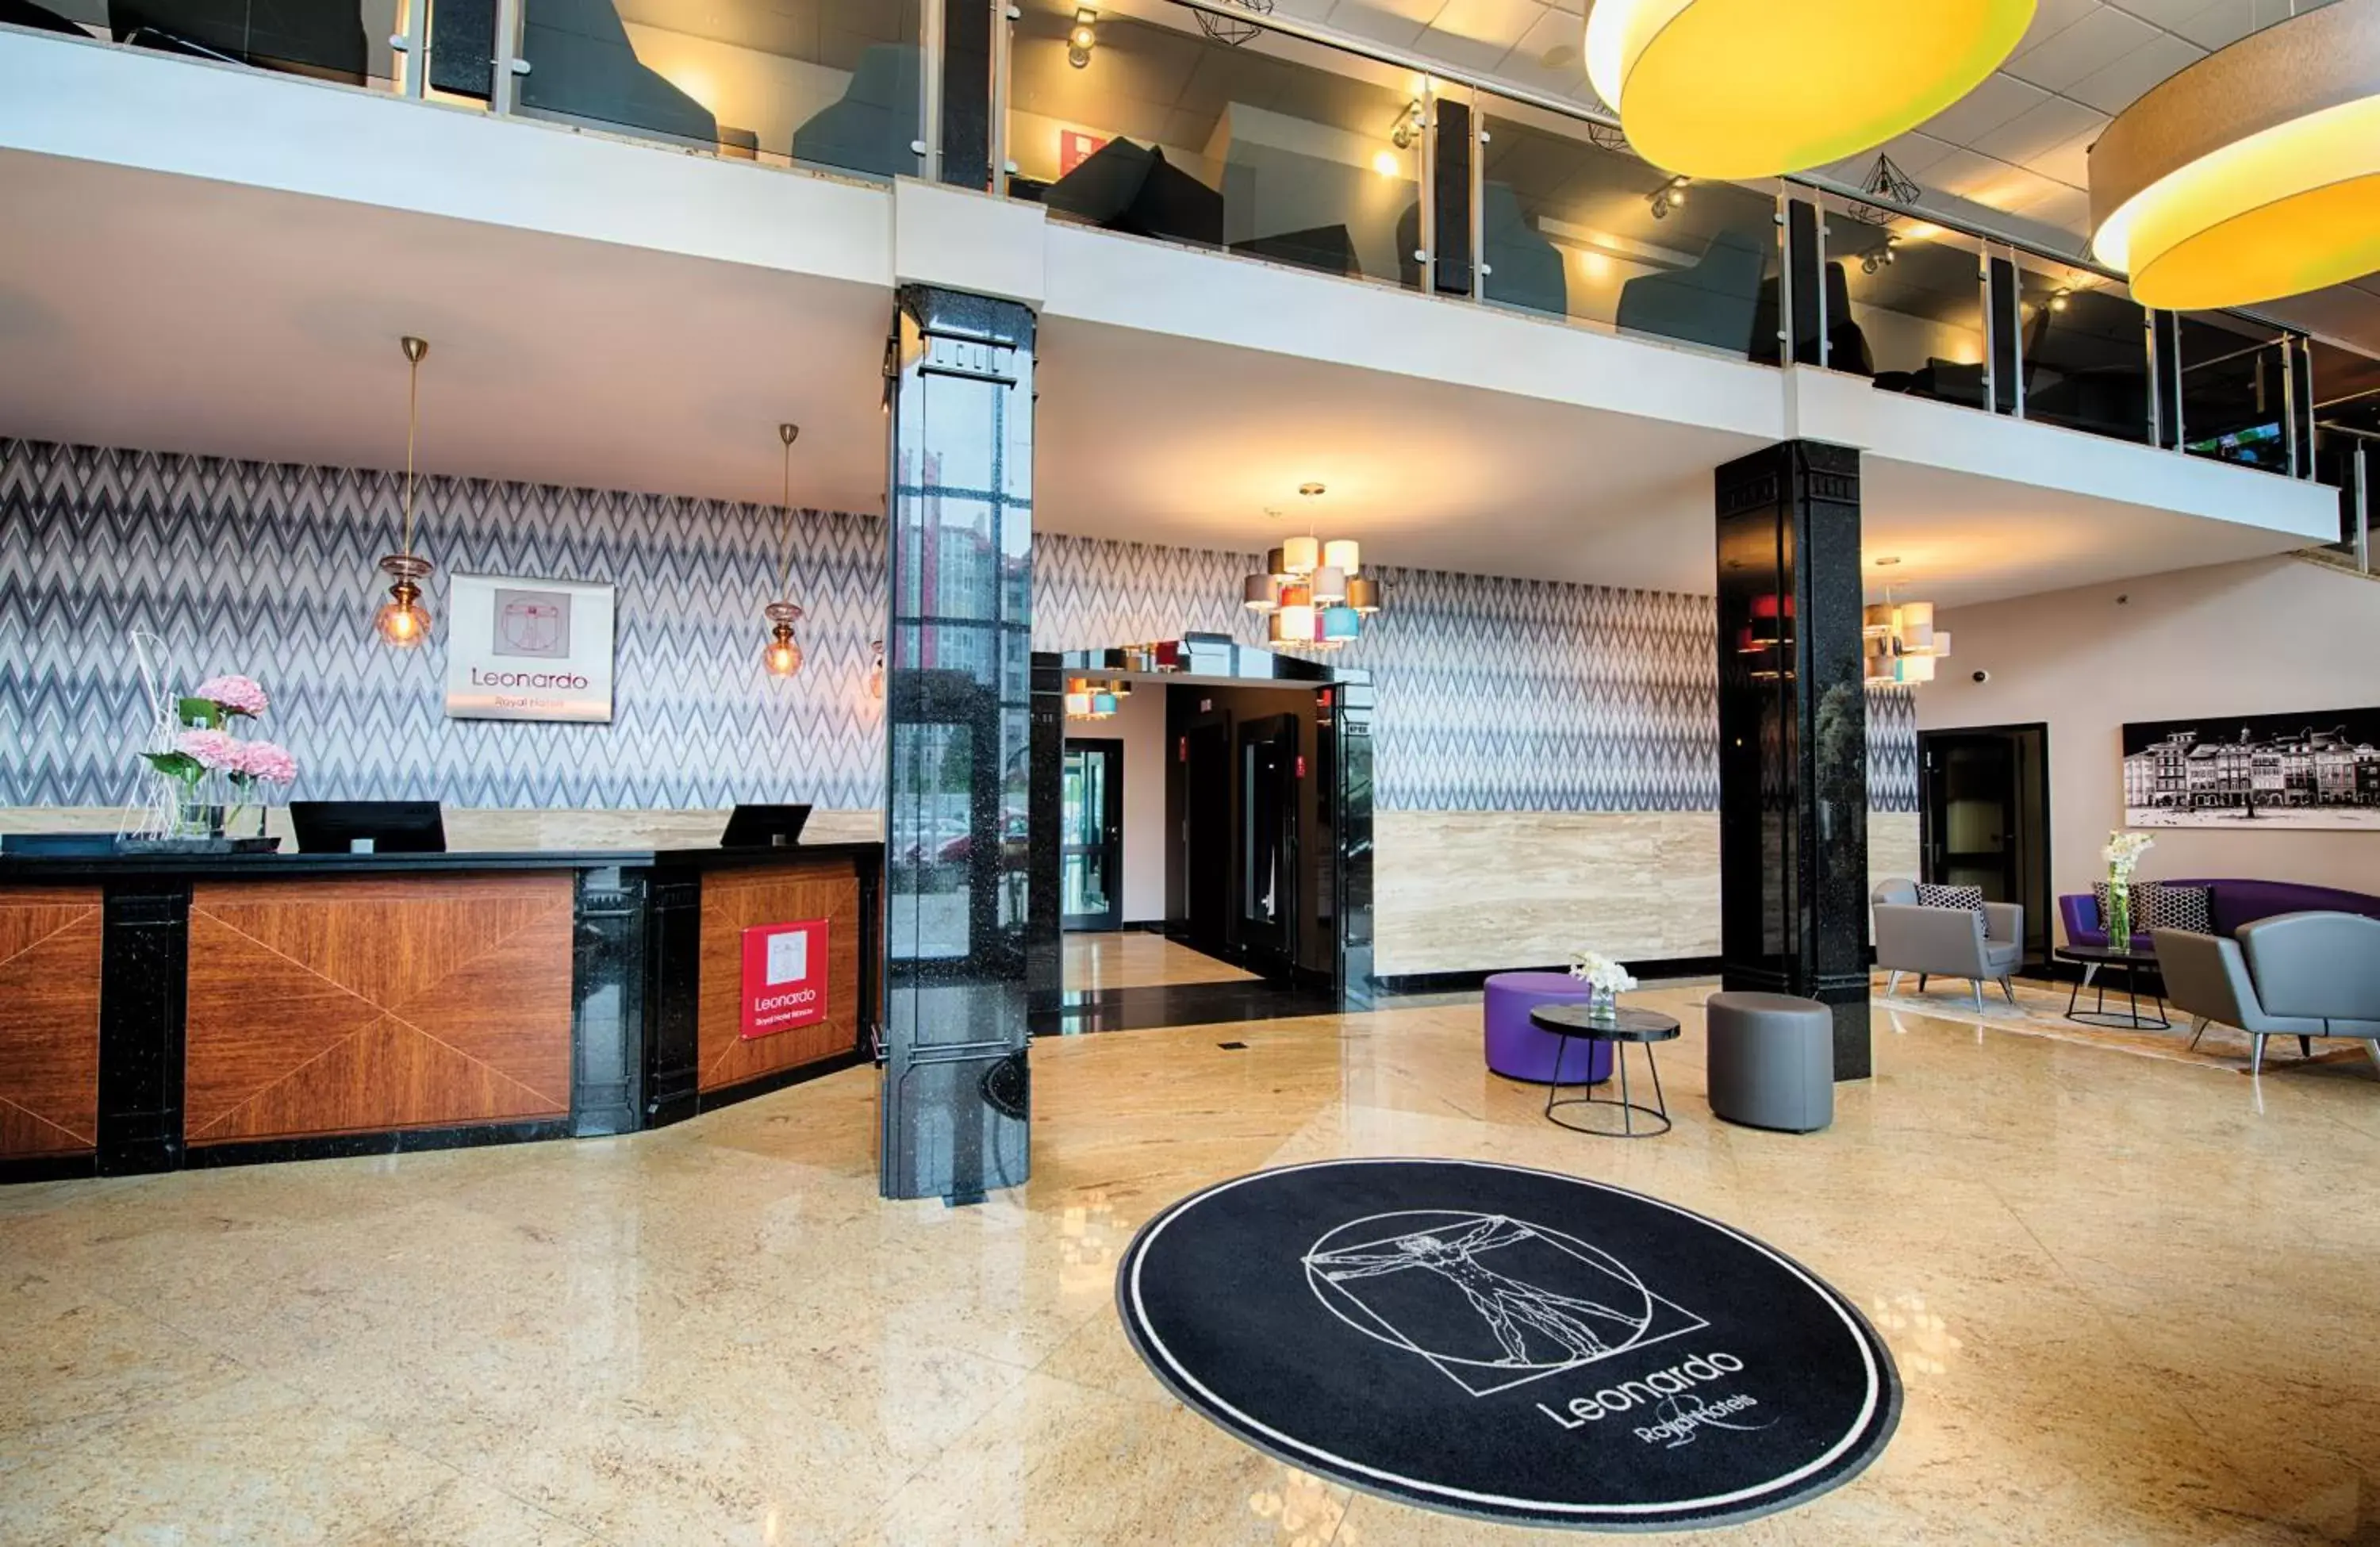 Lobby or reception, Lobby/Reception in Leonardo Royal Hotel Warsaw